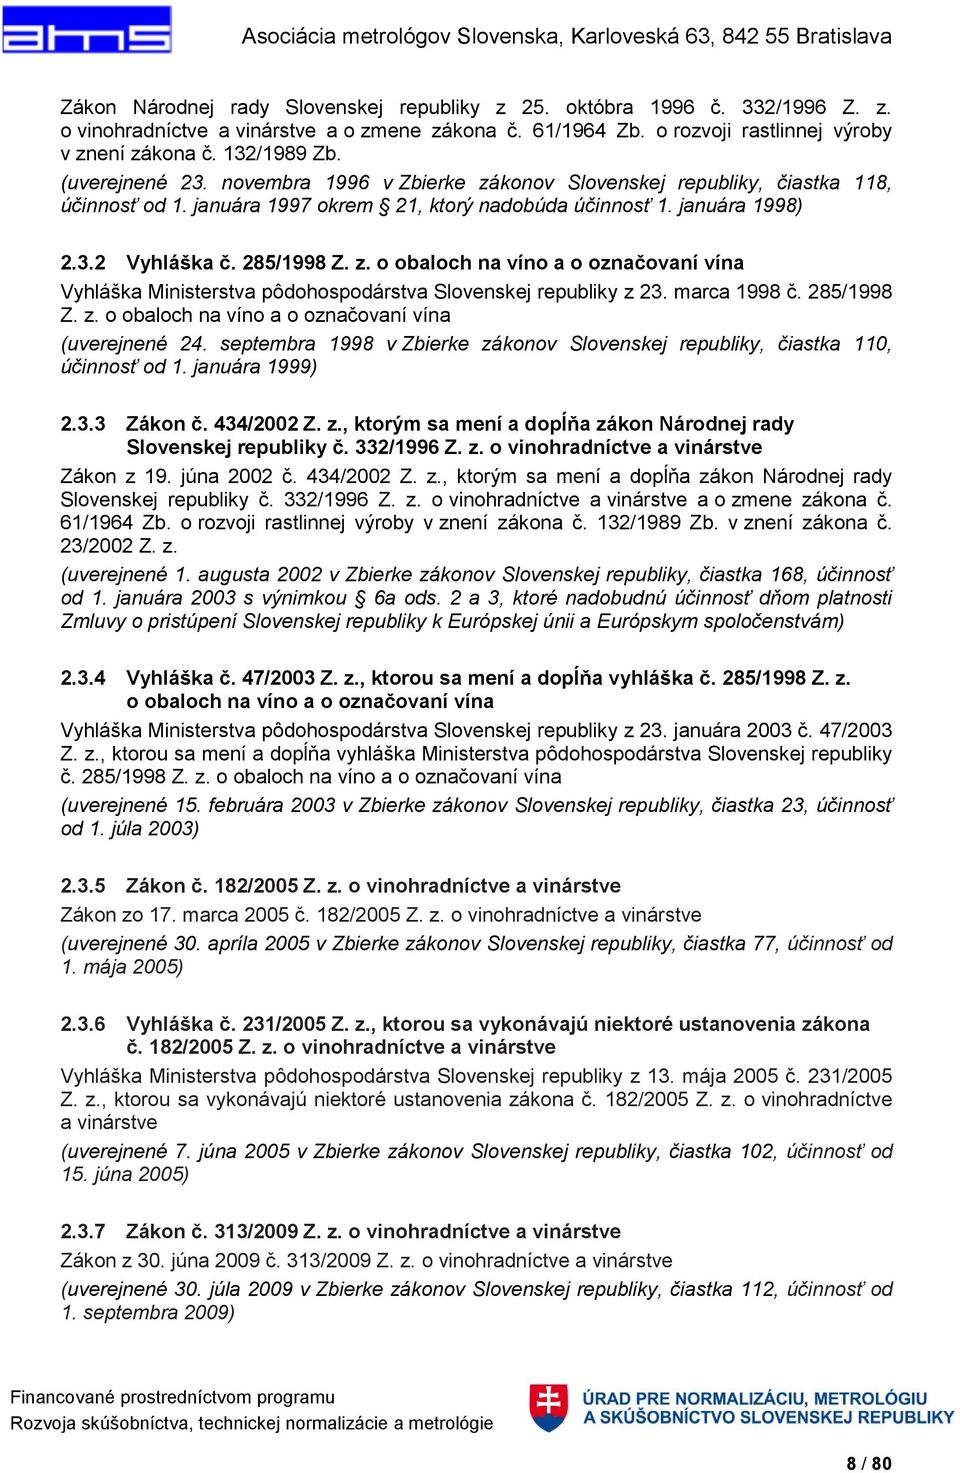 marca 1998 č. 285/1998 Z. z. o obaloch na víno a o označovaní vína (uverejnené 24. septembra 1998 v Zbierke zákonov Slovenskej republiky, čiastka 110, účinnosť od 1. januára 1999) 2.3.3 Zákon č.